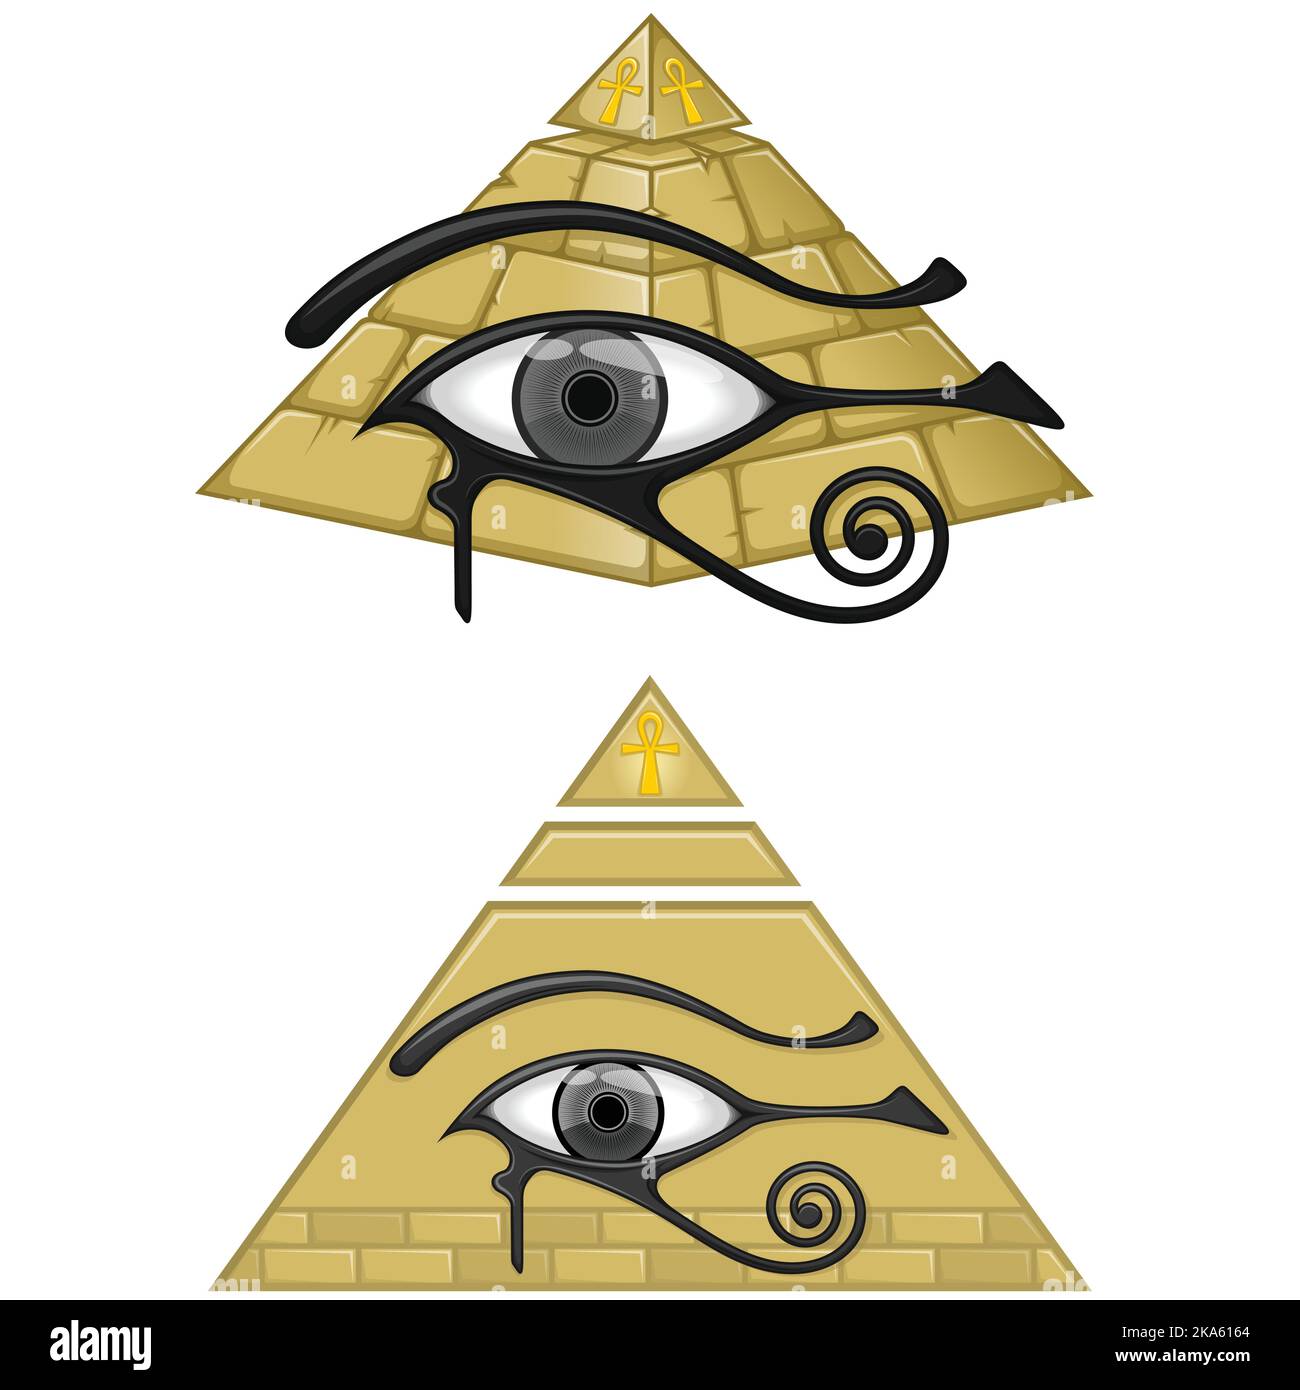 Antico Egitto piramide disegno vettoriale, con l'occhio di horus e croce ricotta, antichi simboli egiziani Illustrazione Vettoriale